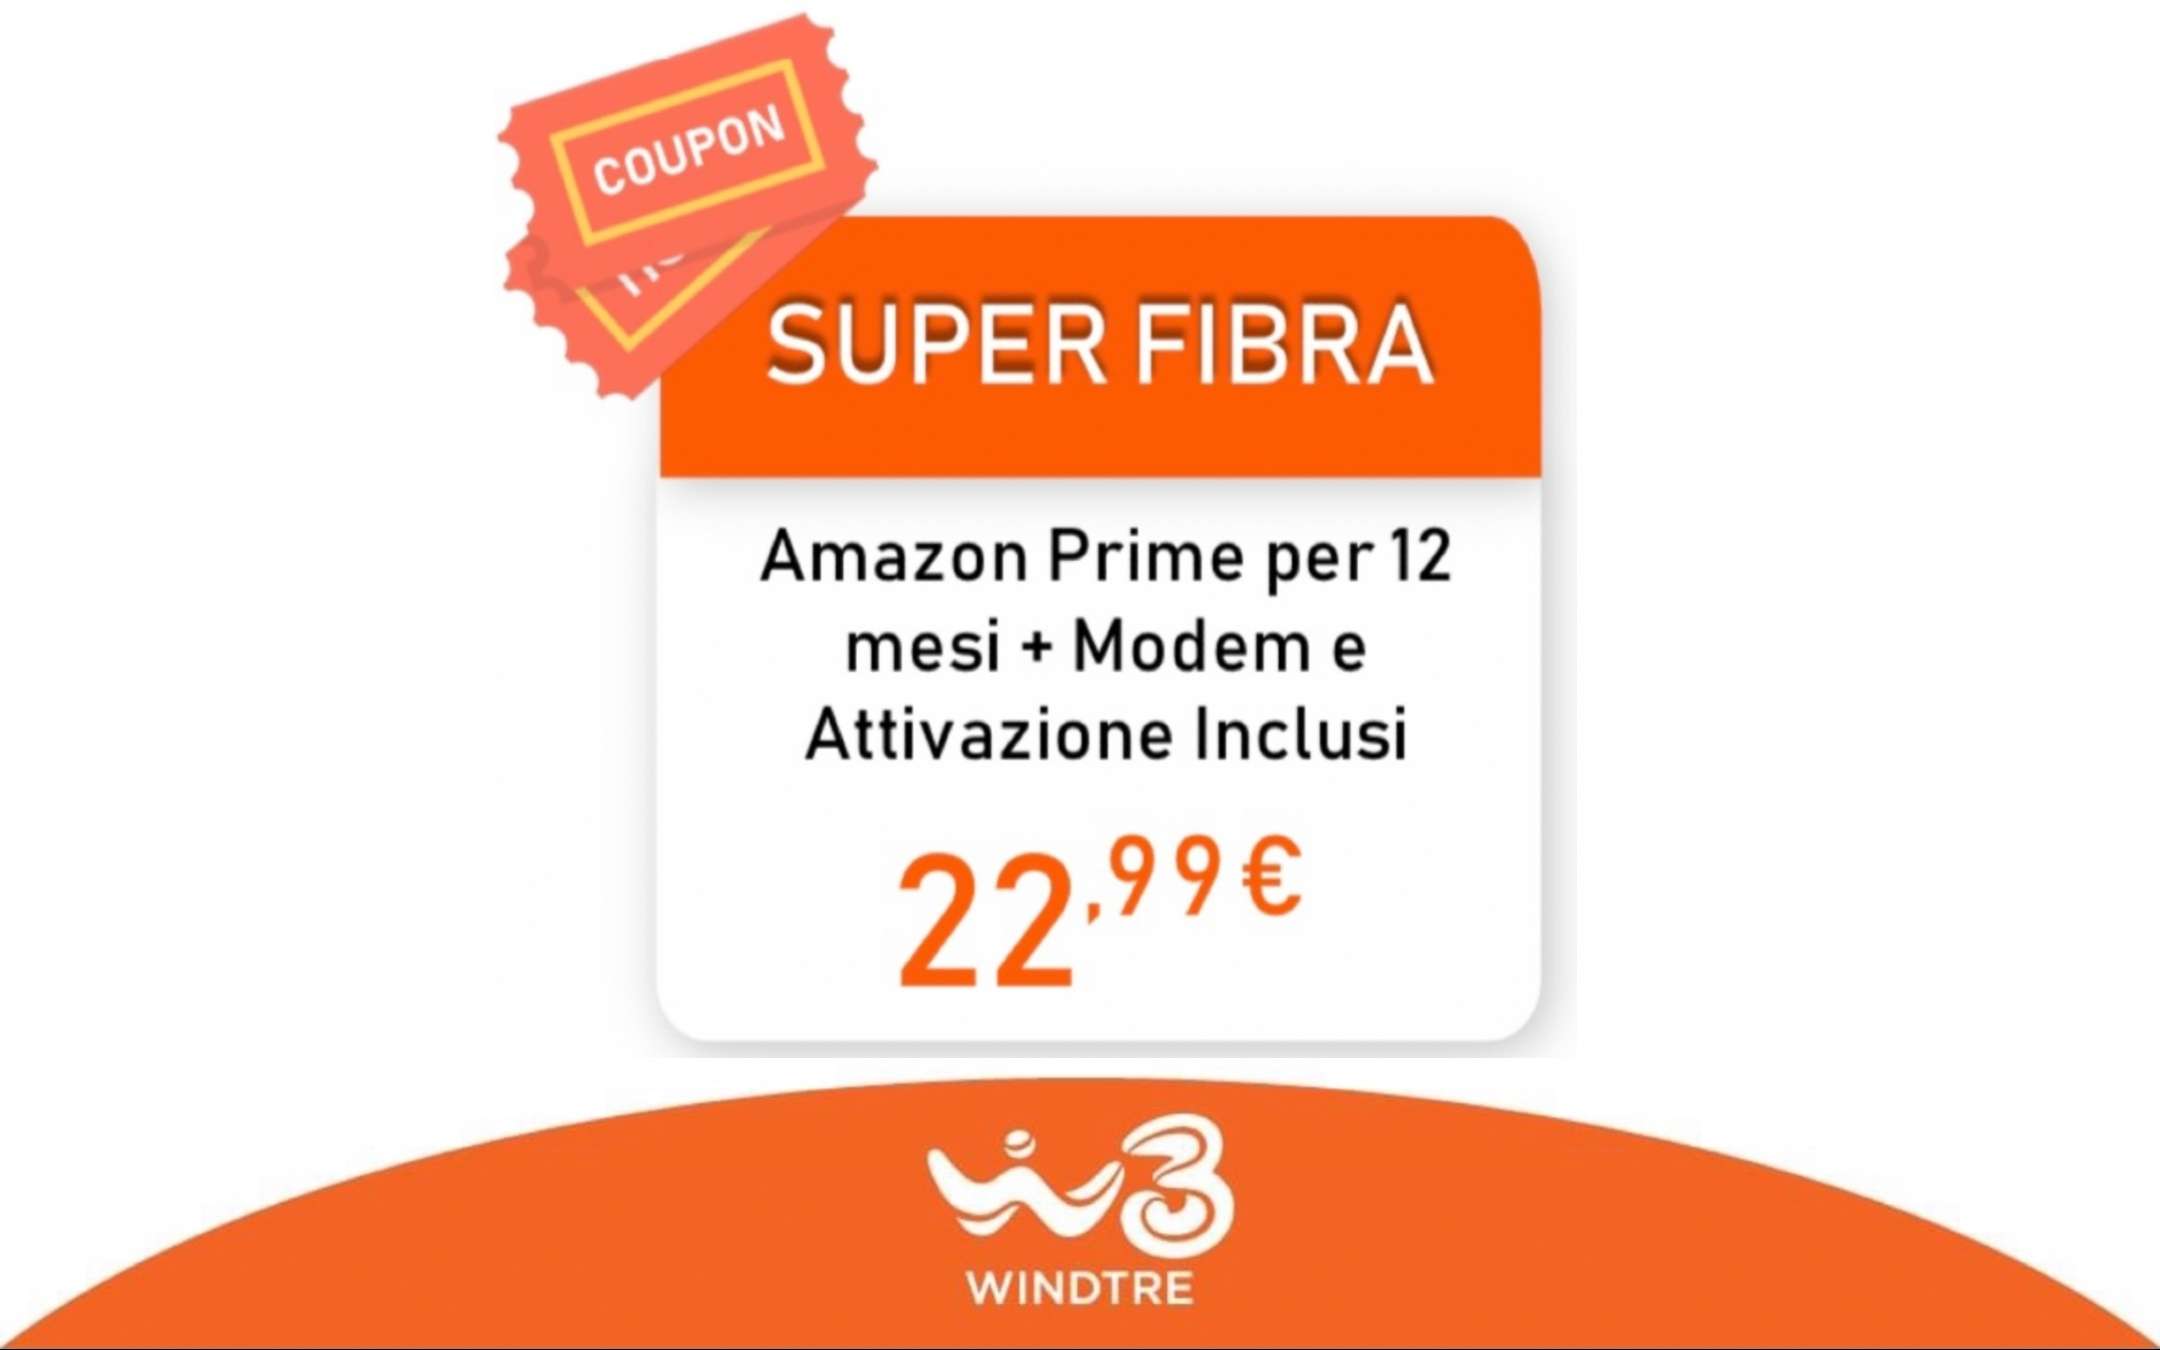 Promo Pazzesca: Super Fibra e Mobile a 29,98€